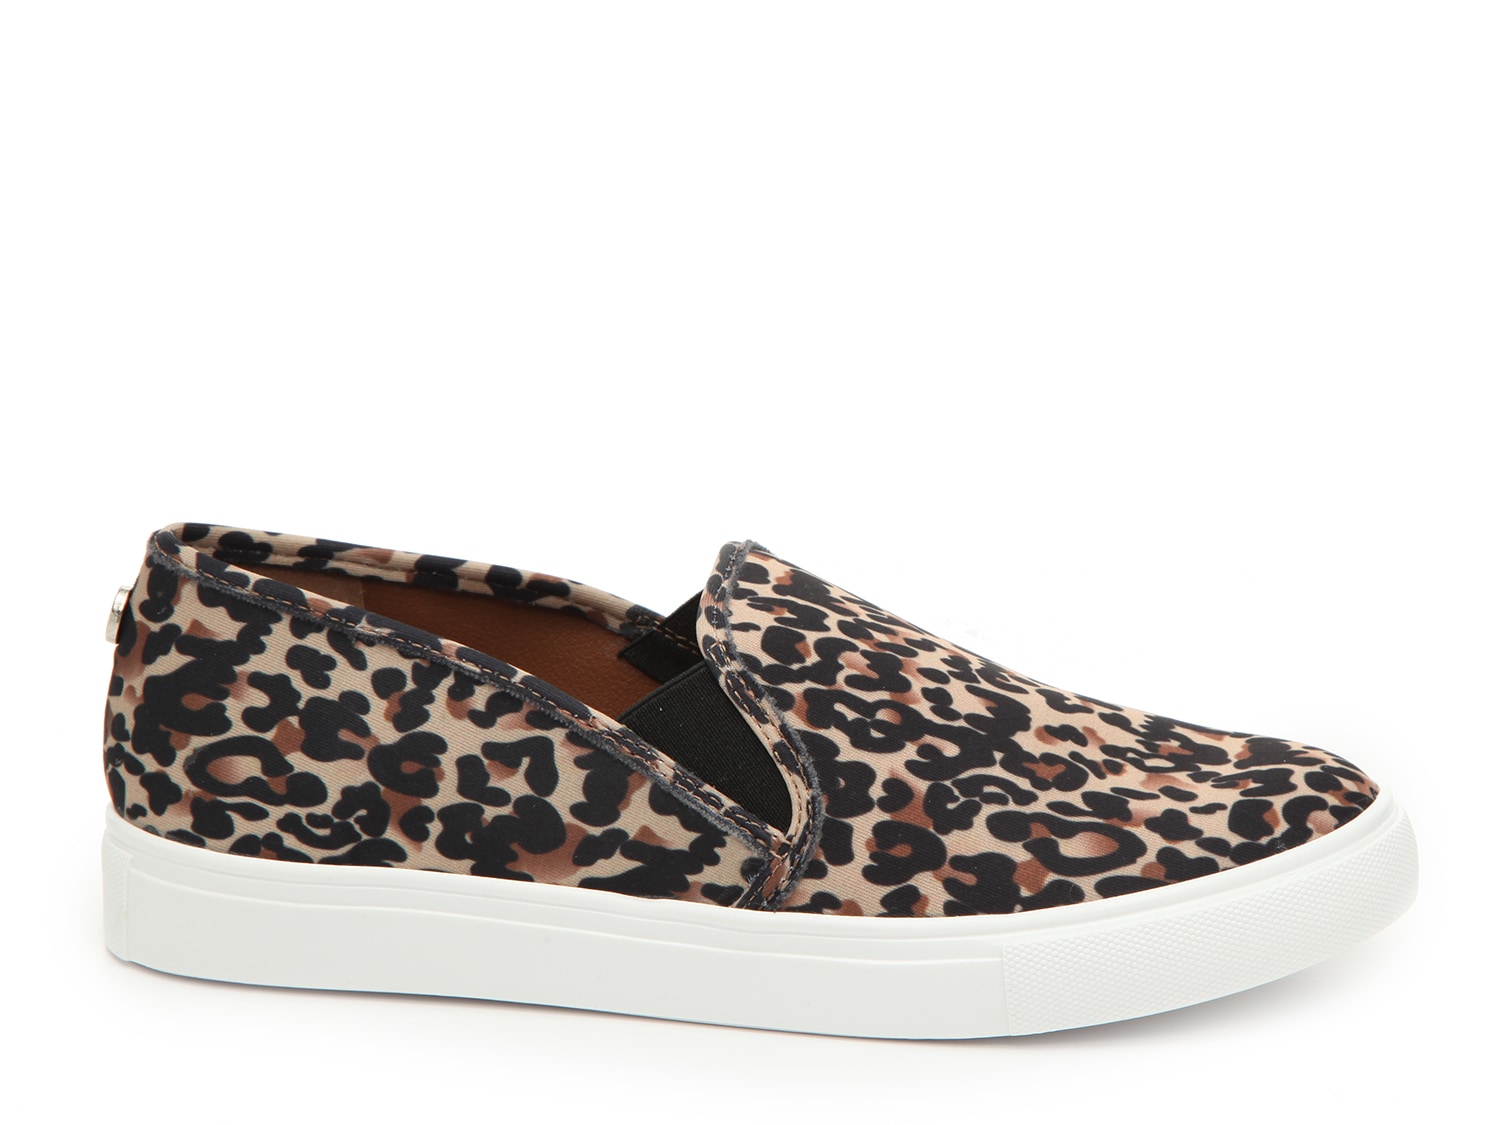 steve madden leopard print slip on sneakers